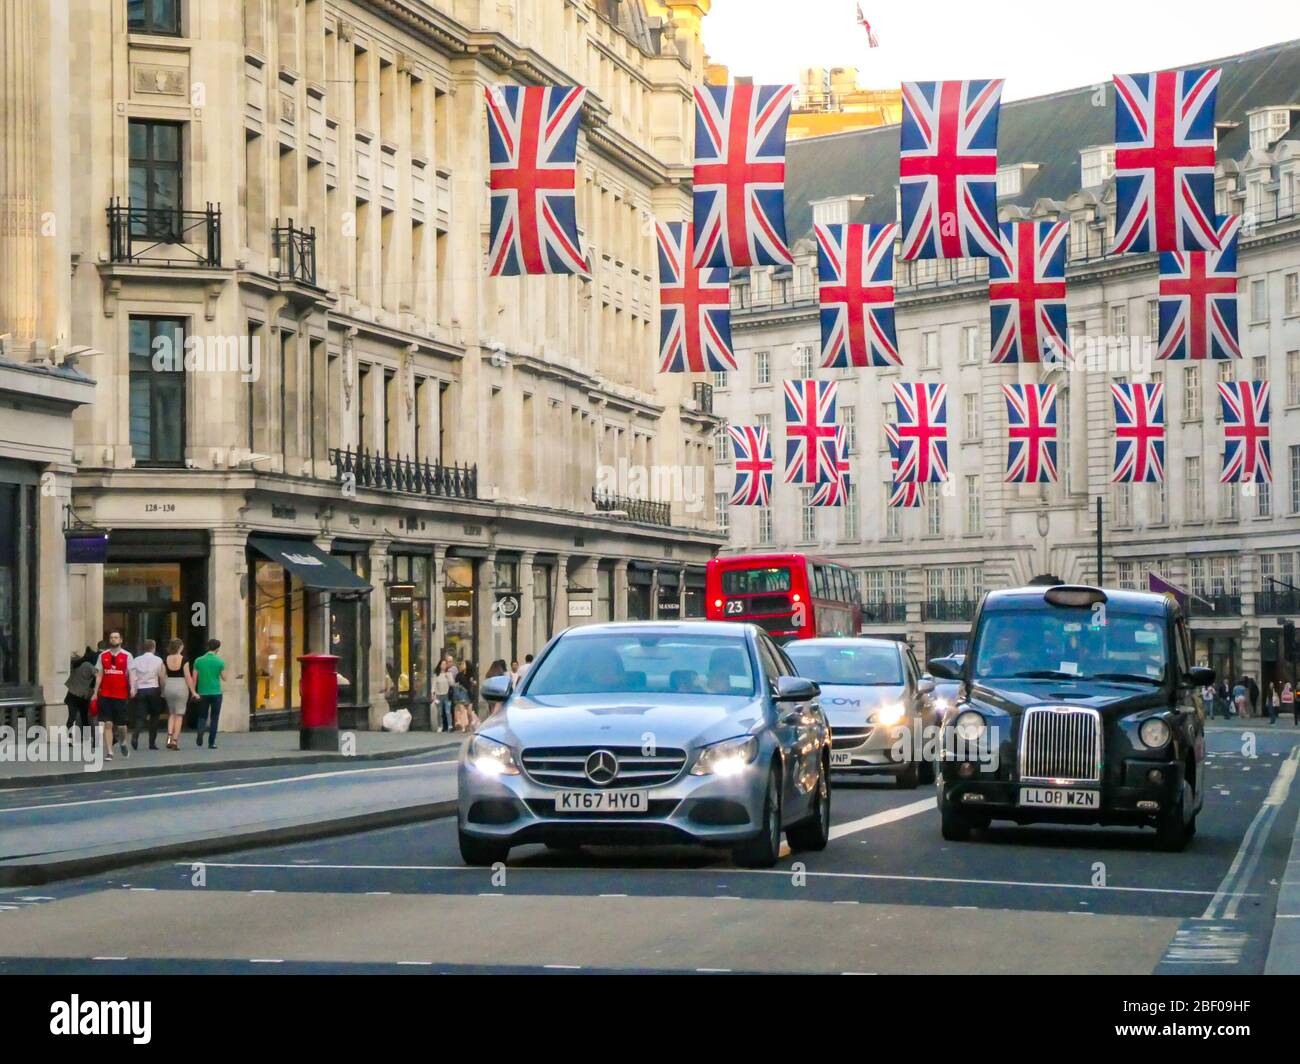 LONDRA - bandiere britanniche su Regent Street, una destinazione di riferimento per il commercio al dettaglio nel West End di Londra Foto Stock